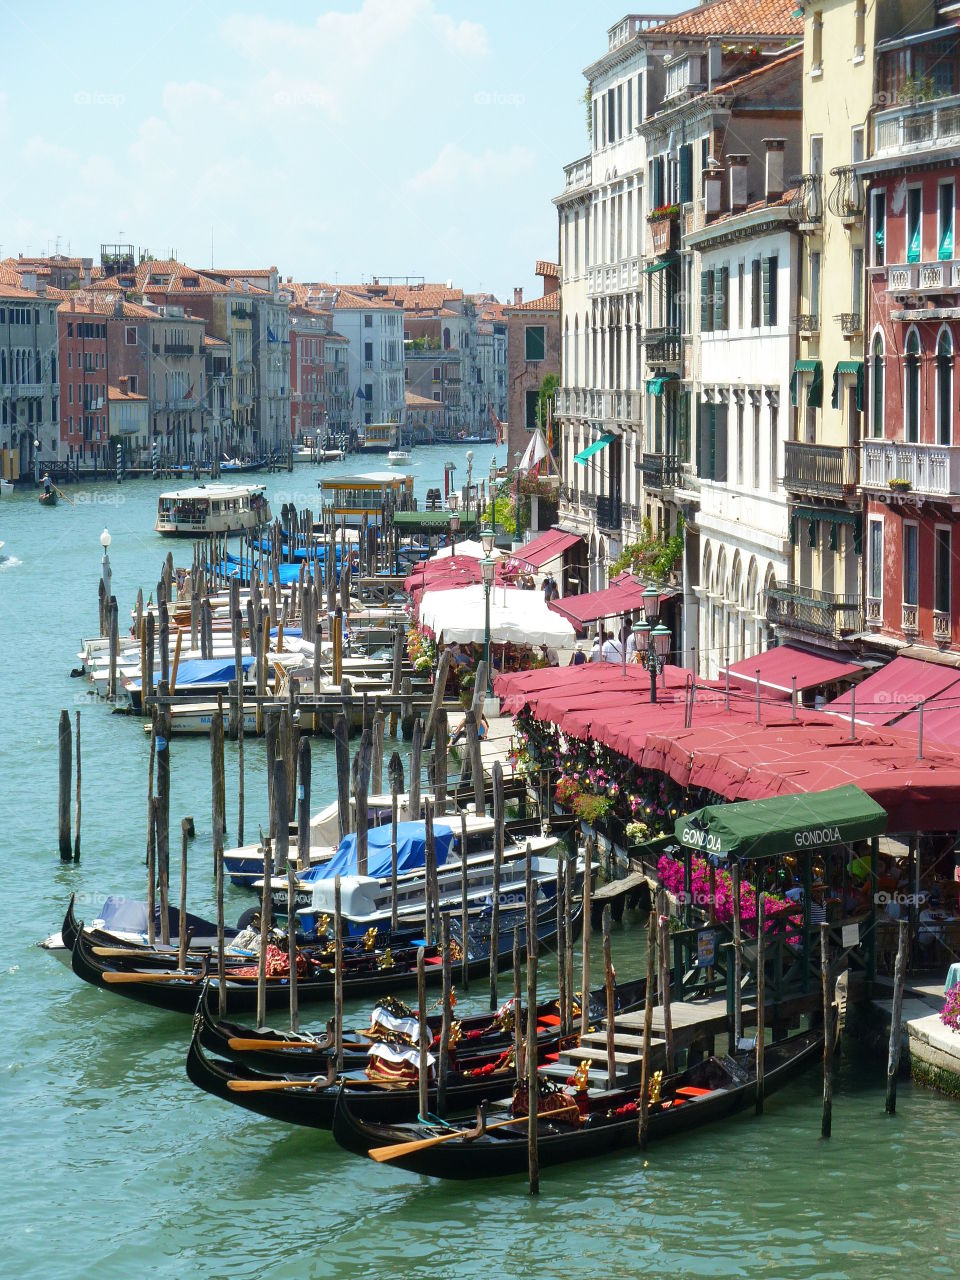 Venice / Italy